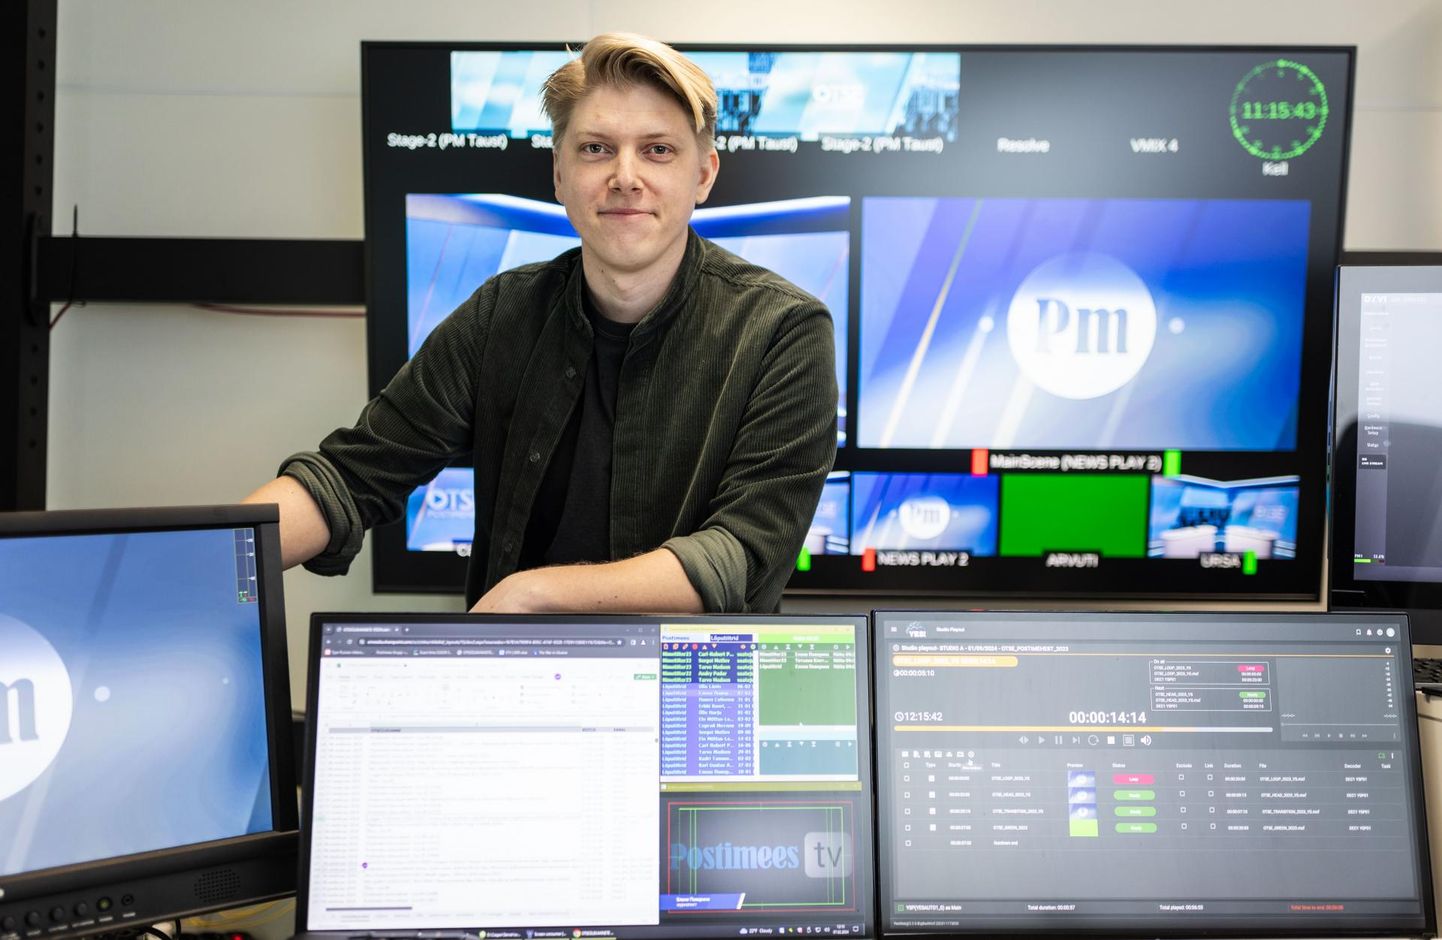 Postimees TV tehnikajuhi-produtsendi Rasmus Puksmanni sõnul suudab tema meeskond sündmustele reageerida kiiresti ja korraldada kiiresti otseülekanne ükskõik kust Eestimaa nurgast.